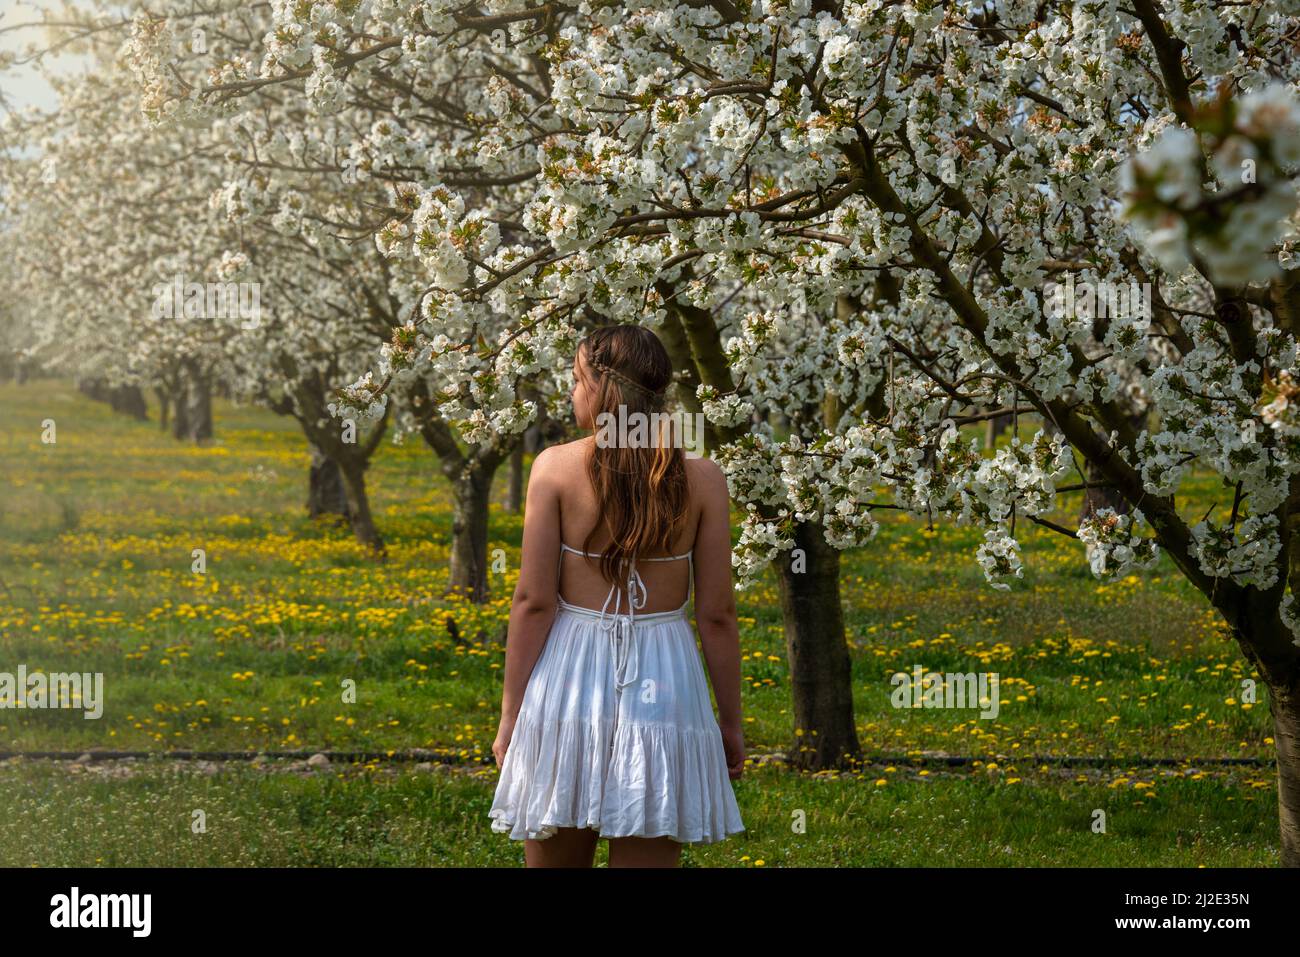 Portrait d'une jeune femme vêtue d'une robe blanche marchant dans un verger de cerisier avec des arbres en fleur. Image printemps été .provence , France . Banque D'Images